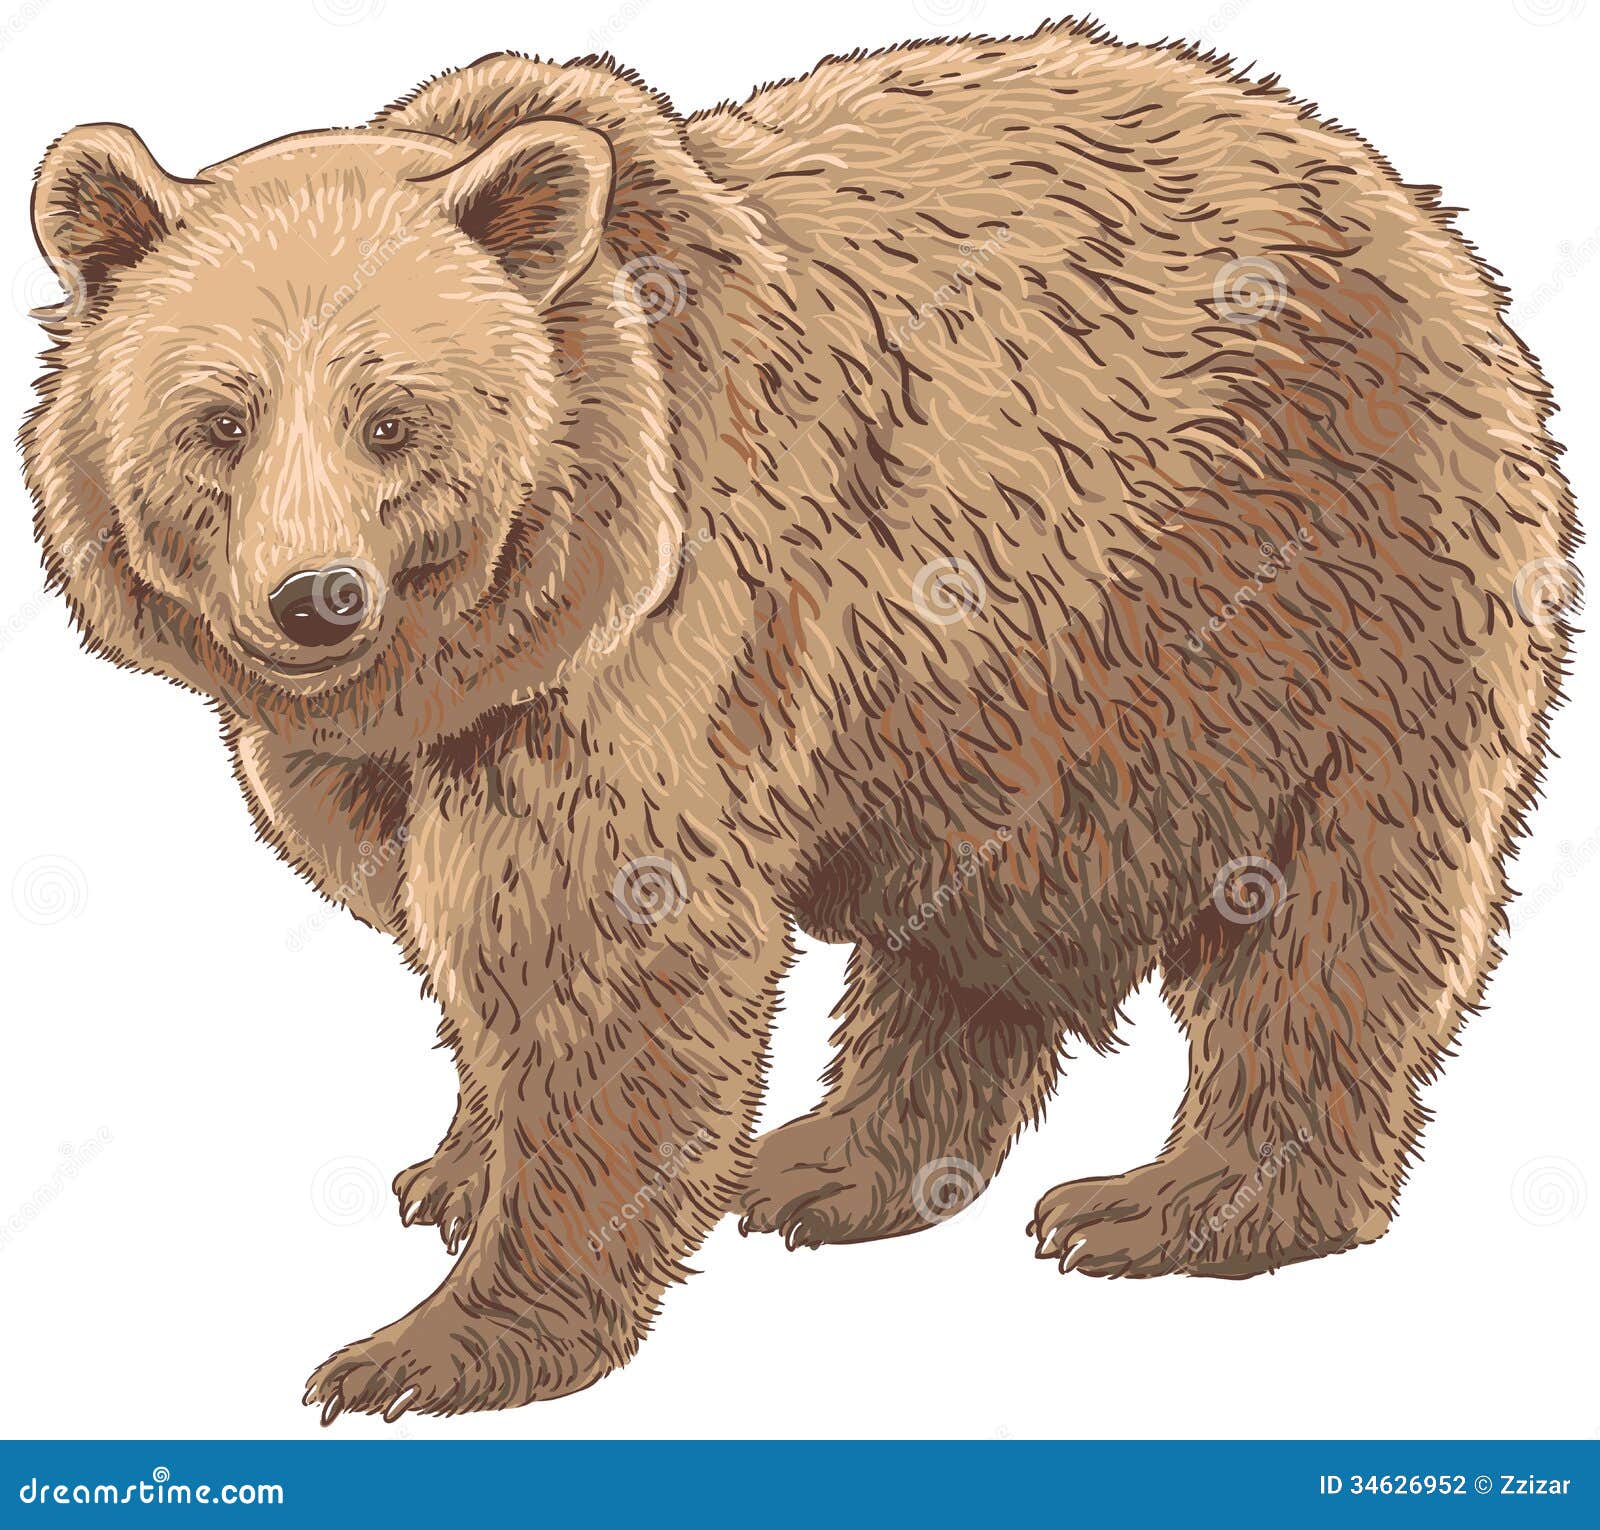 Megsy V Illustration: Bear Research